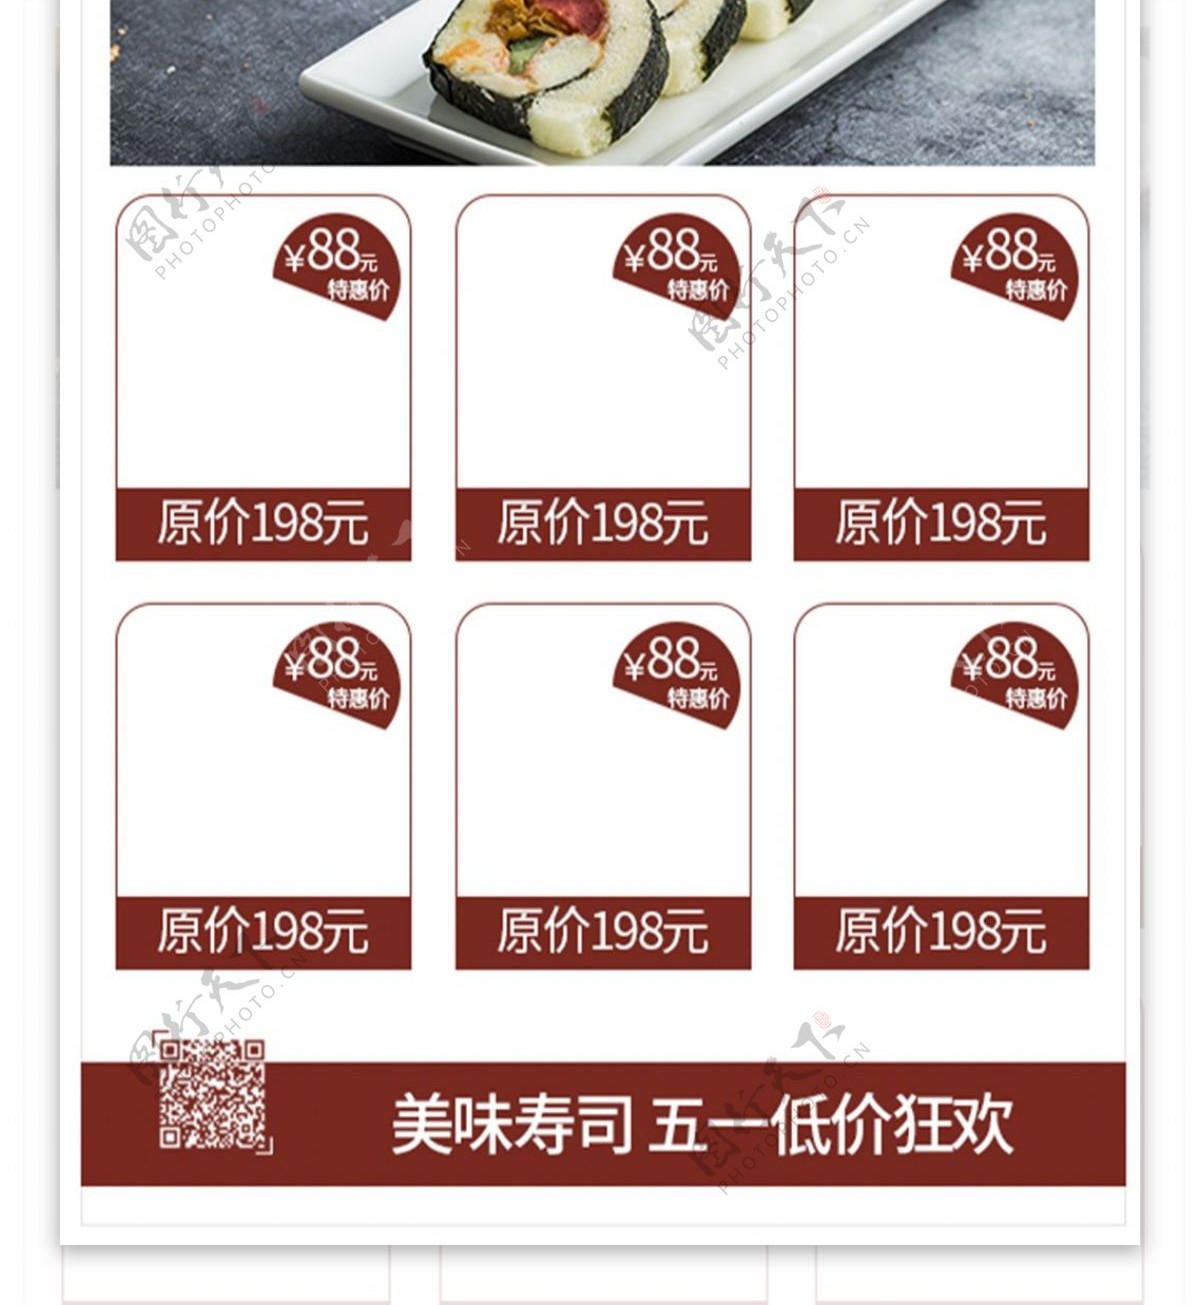 原创字体美味寿司美食dm创意促销宣传单